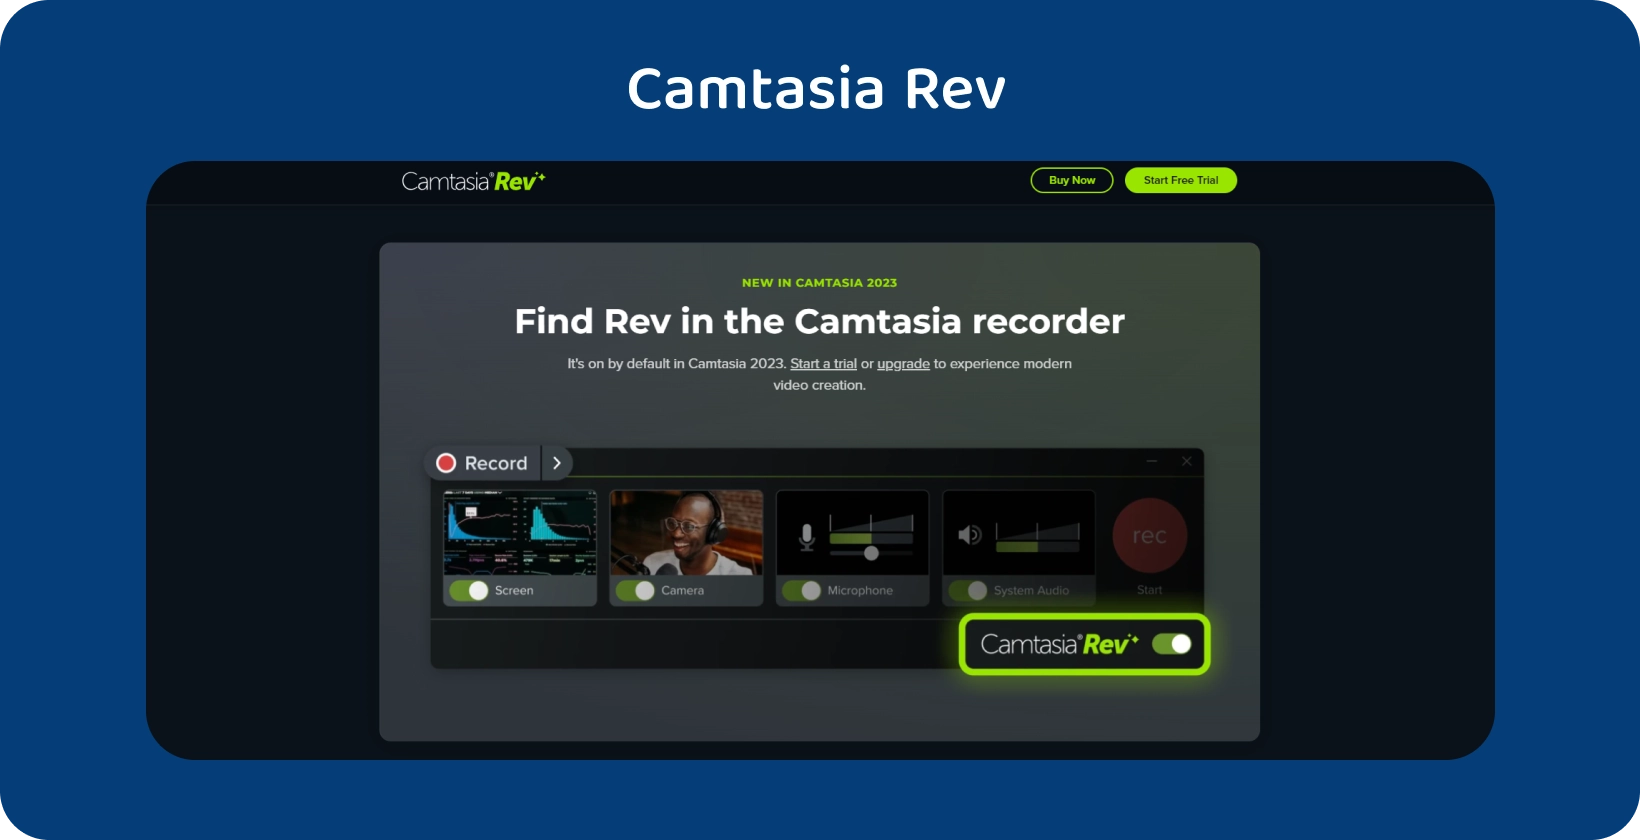 באנר דף הבית של Camtasia Rev, המציג כלים ליצירת וידאו בסיוע AI להפקת וידאו משופרת.